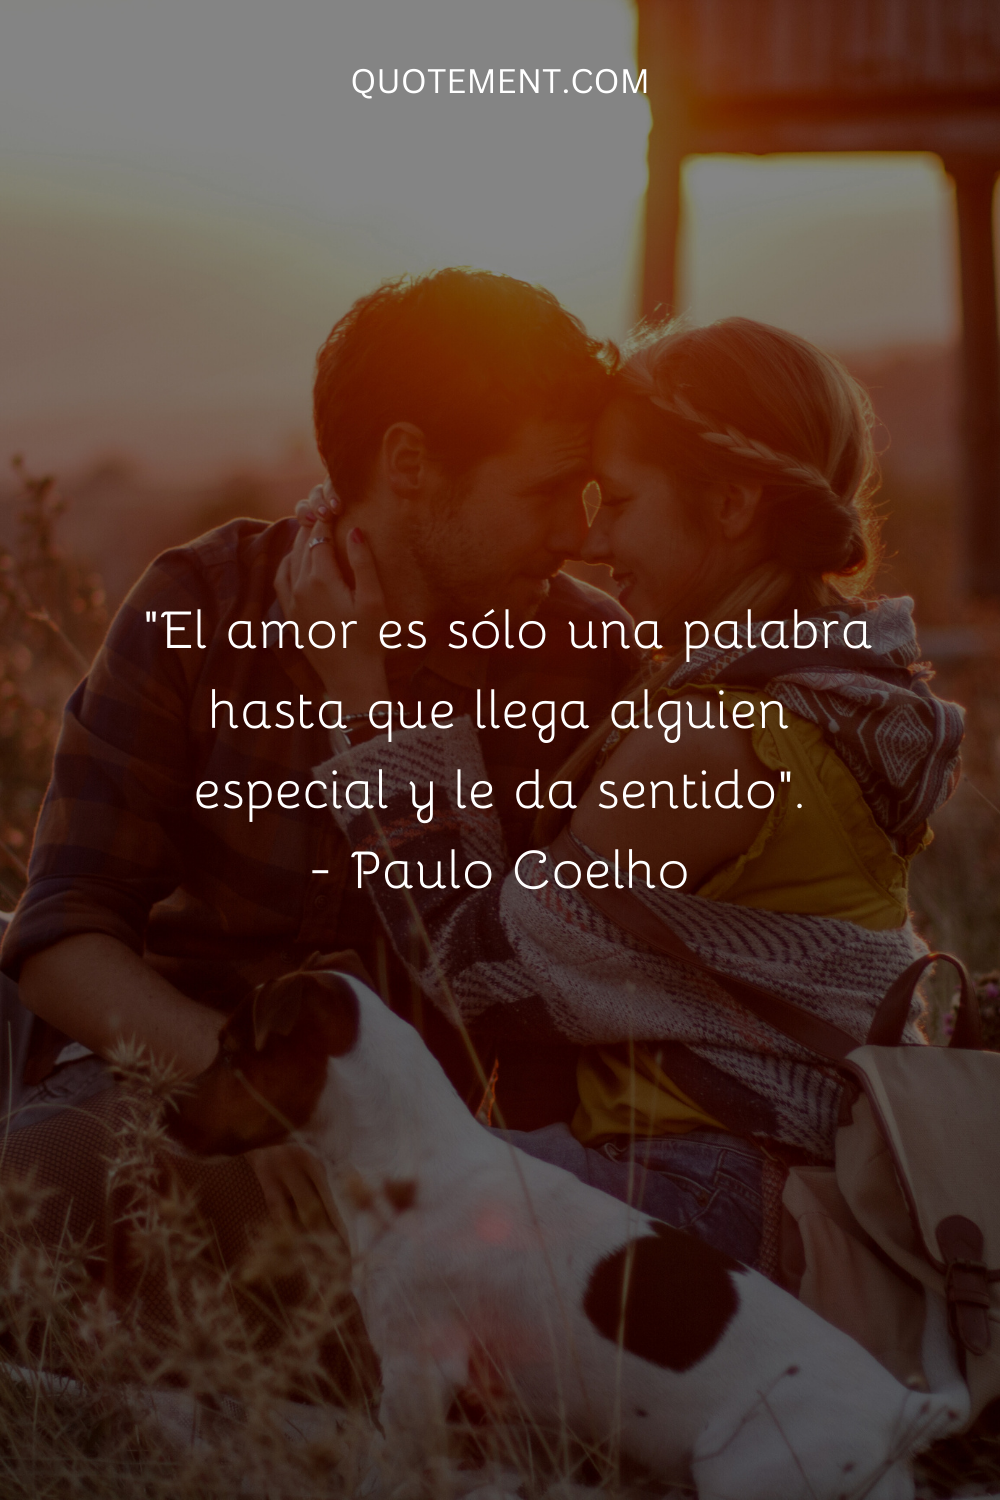 "El amor es sólo una palabra hasta que llega alguien especial y le da sentido". - Paulo Coelho